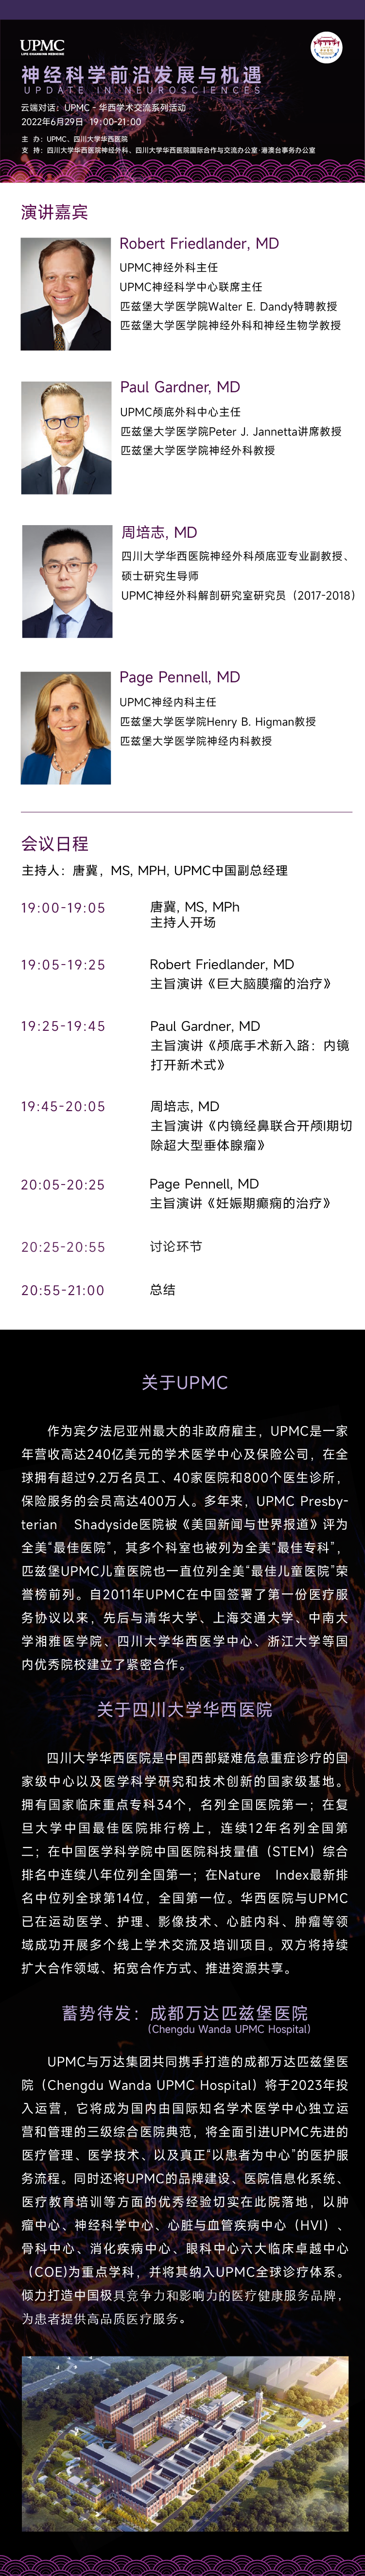 UPMC 携手华西医院分享神经科学前沿进展 直播报名中